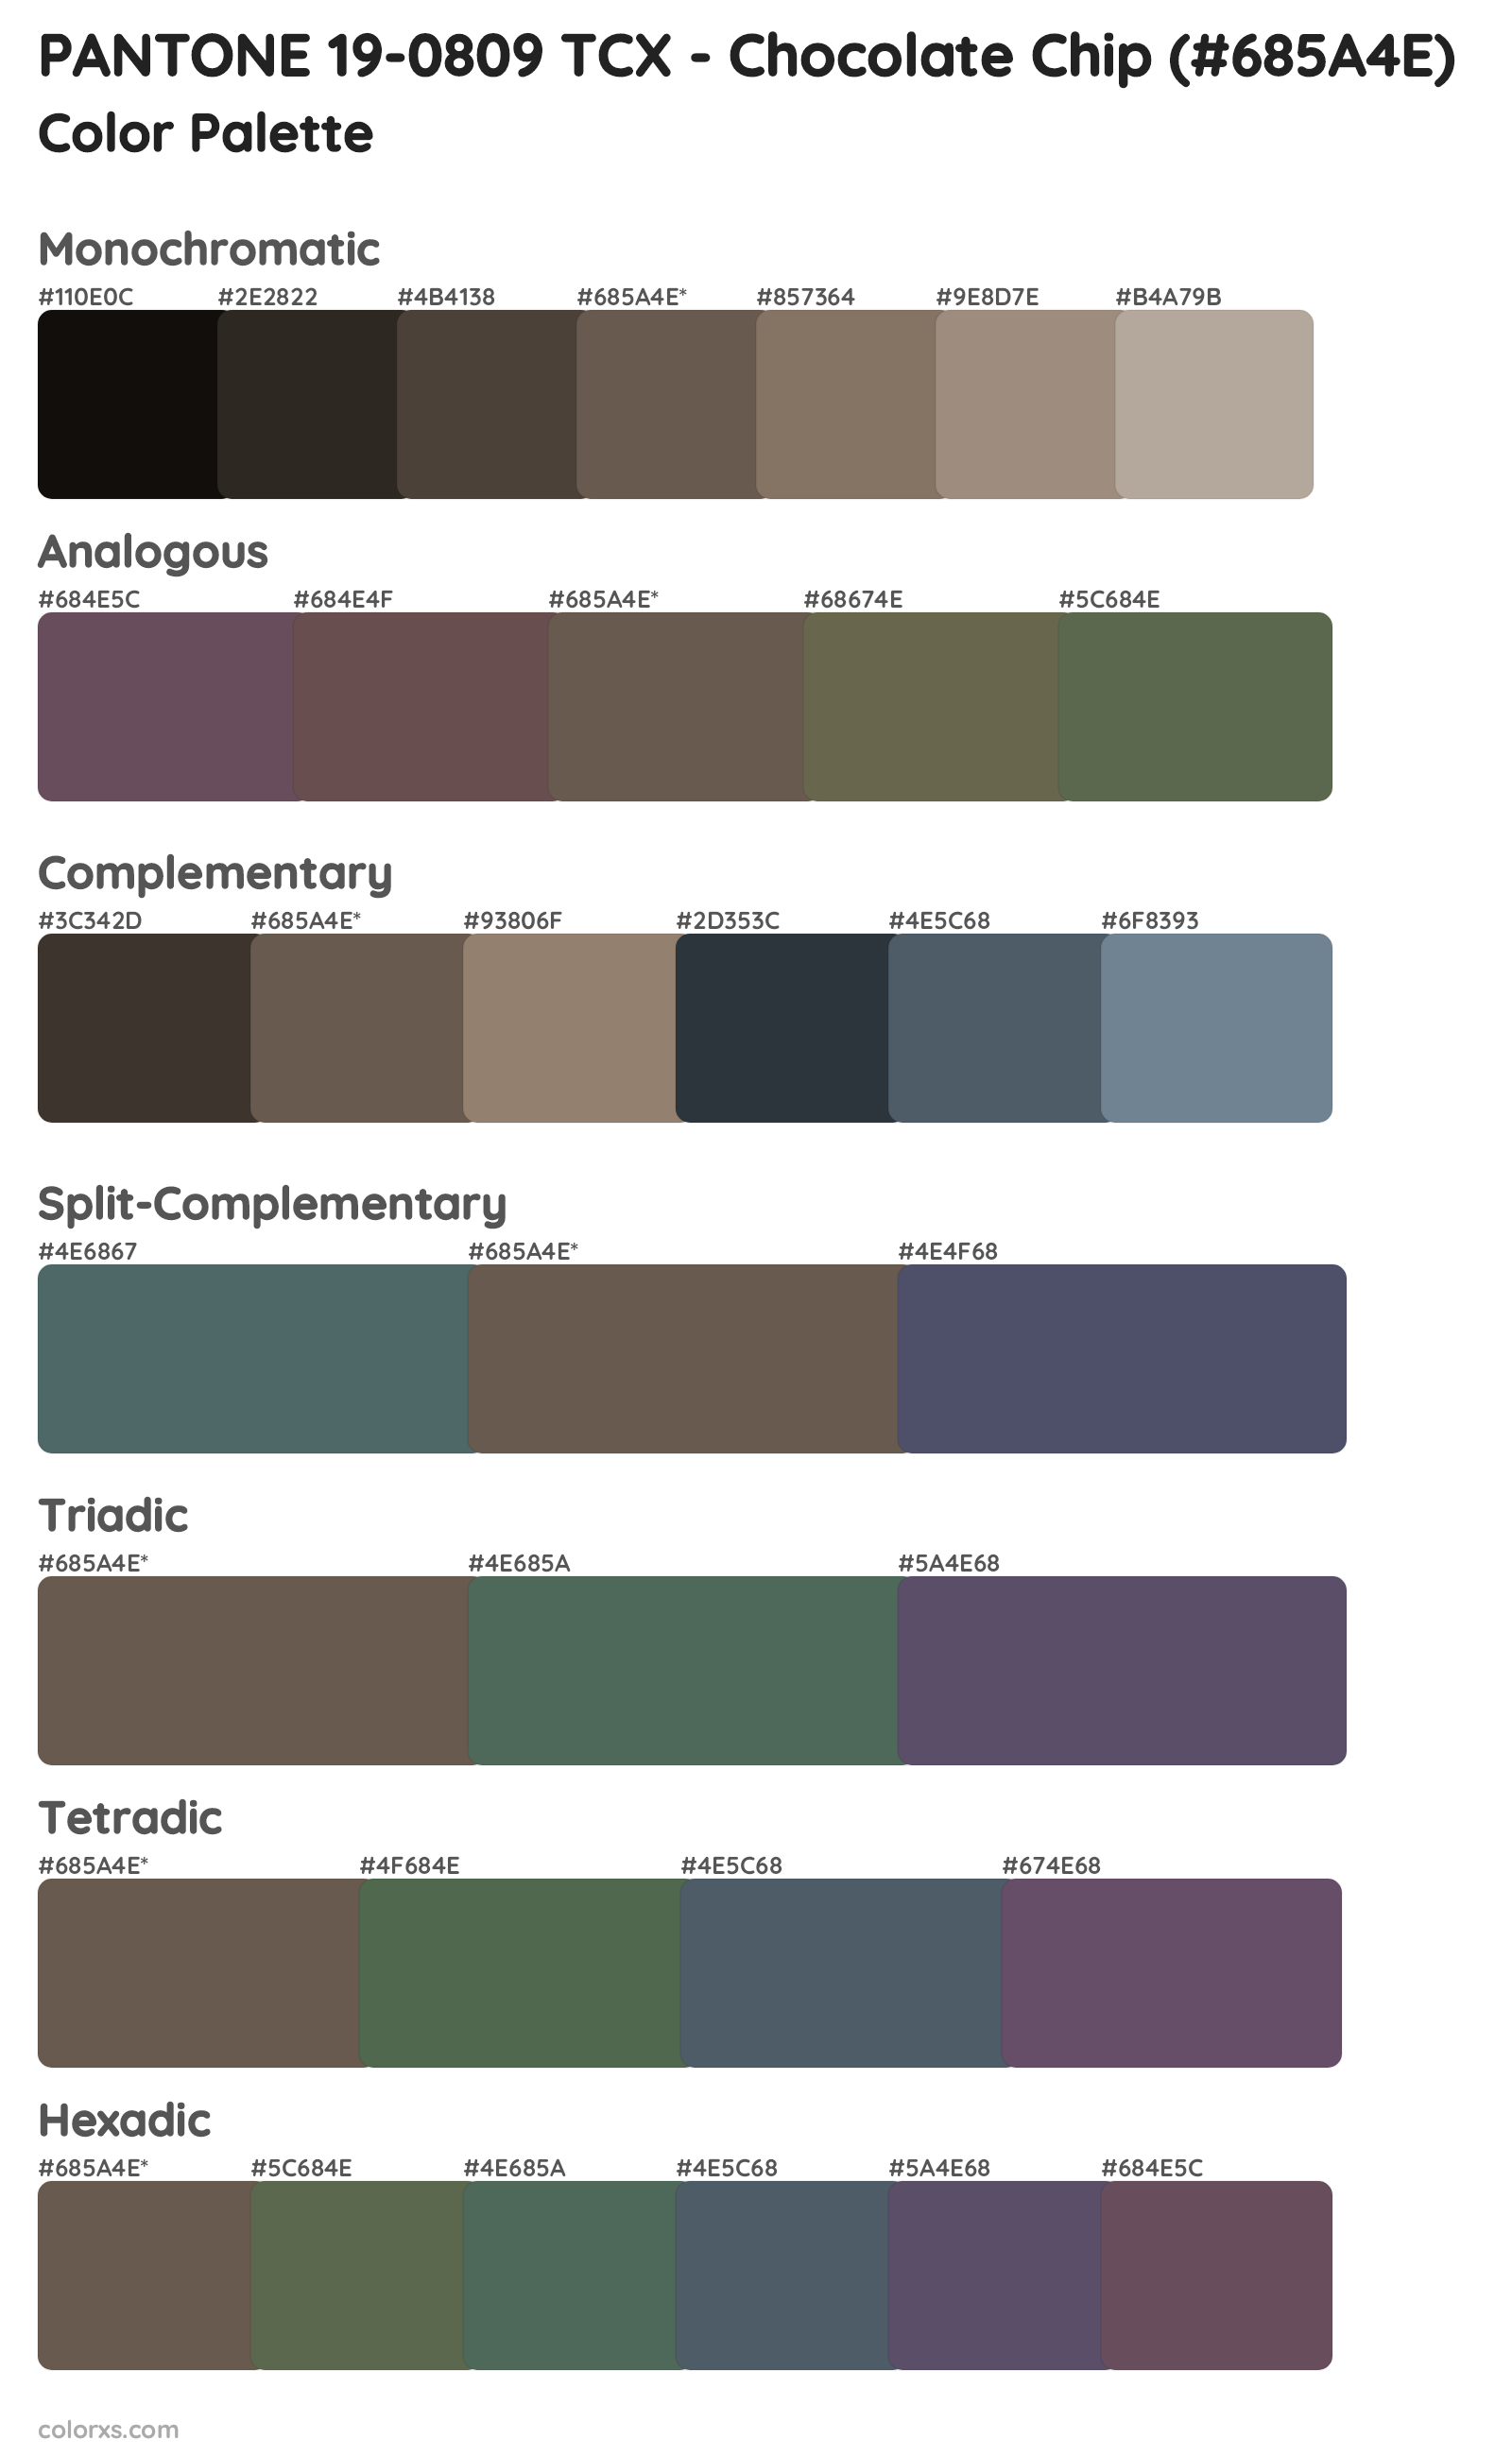 PANTONE 19-0809 TCX - Chocolate Chip Color Scheme Palettes